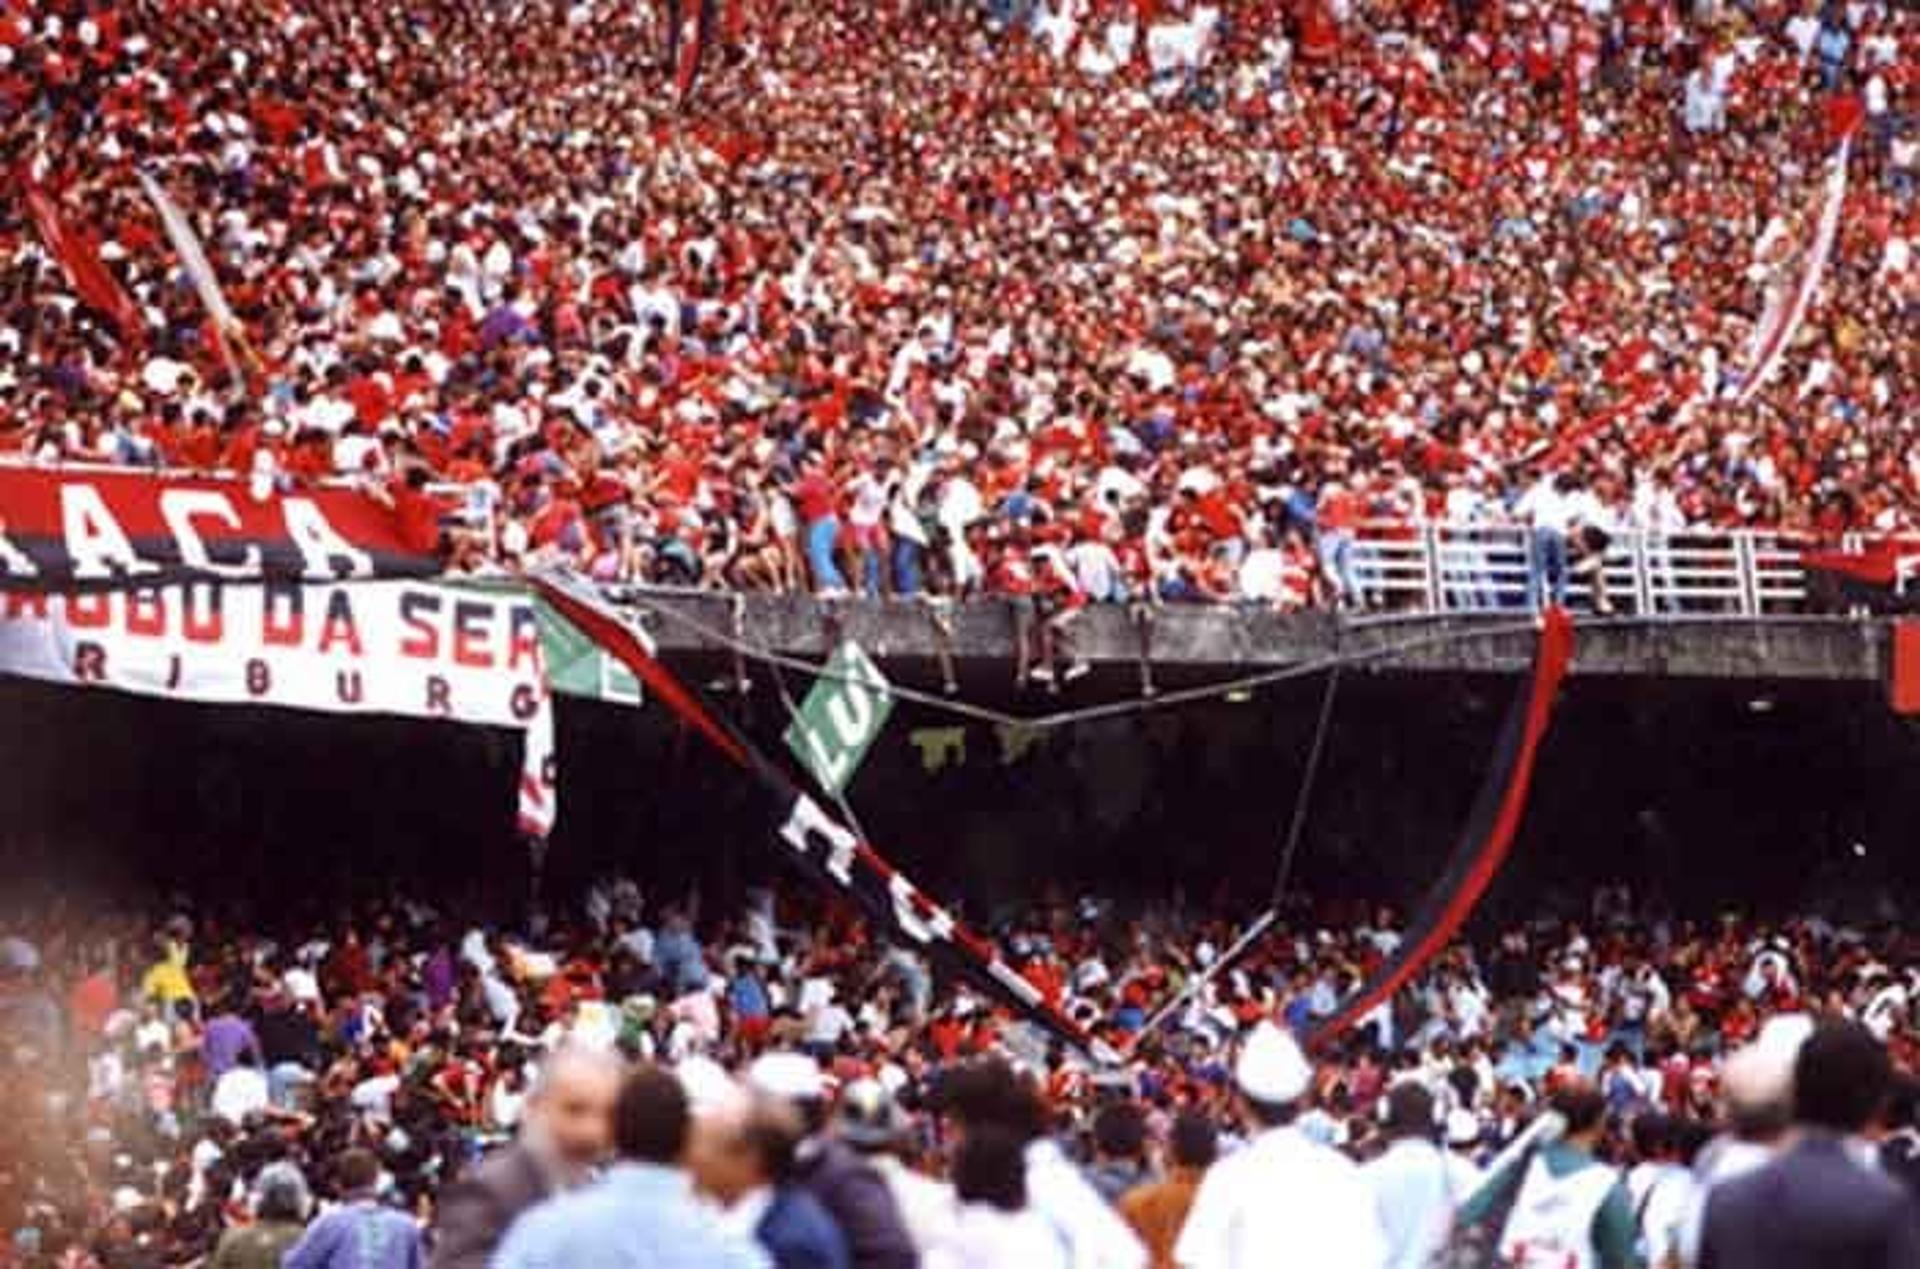 Antes da final do Brasileirão, entre Flamengo e Botafogo, parte da arquibancada cedeu no setor destinado a rubro-negros